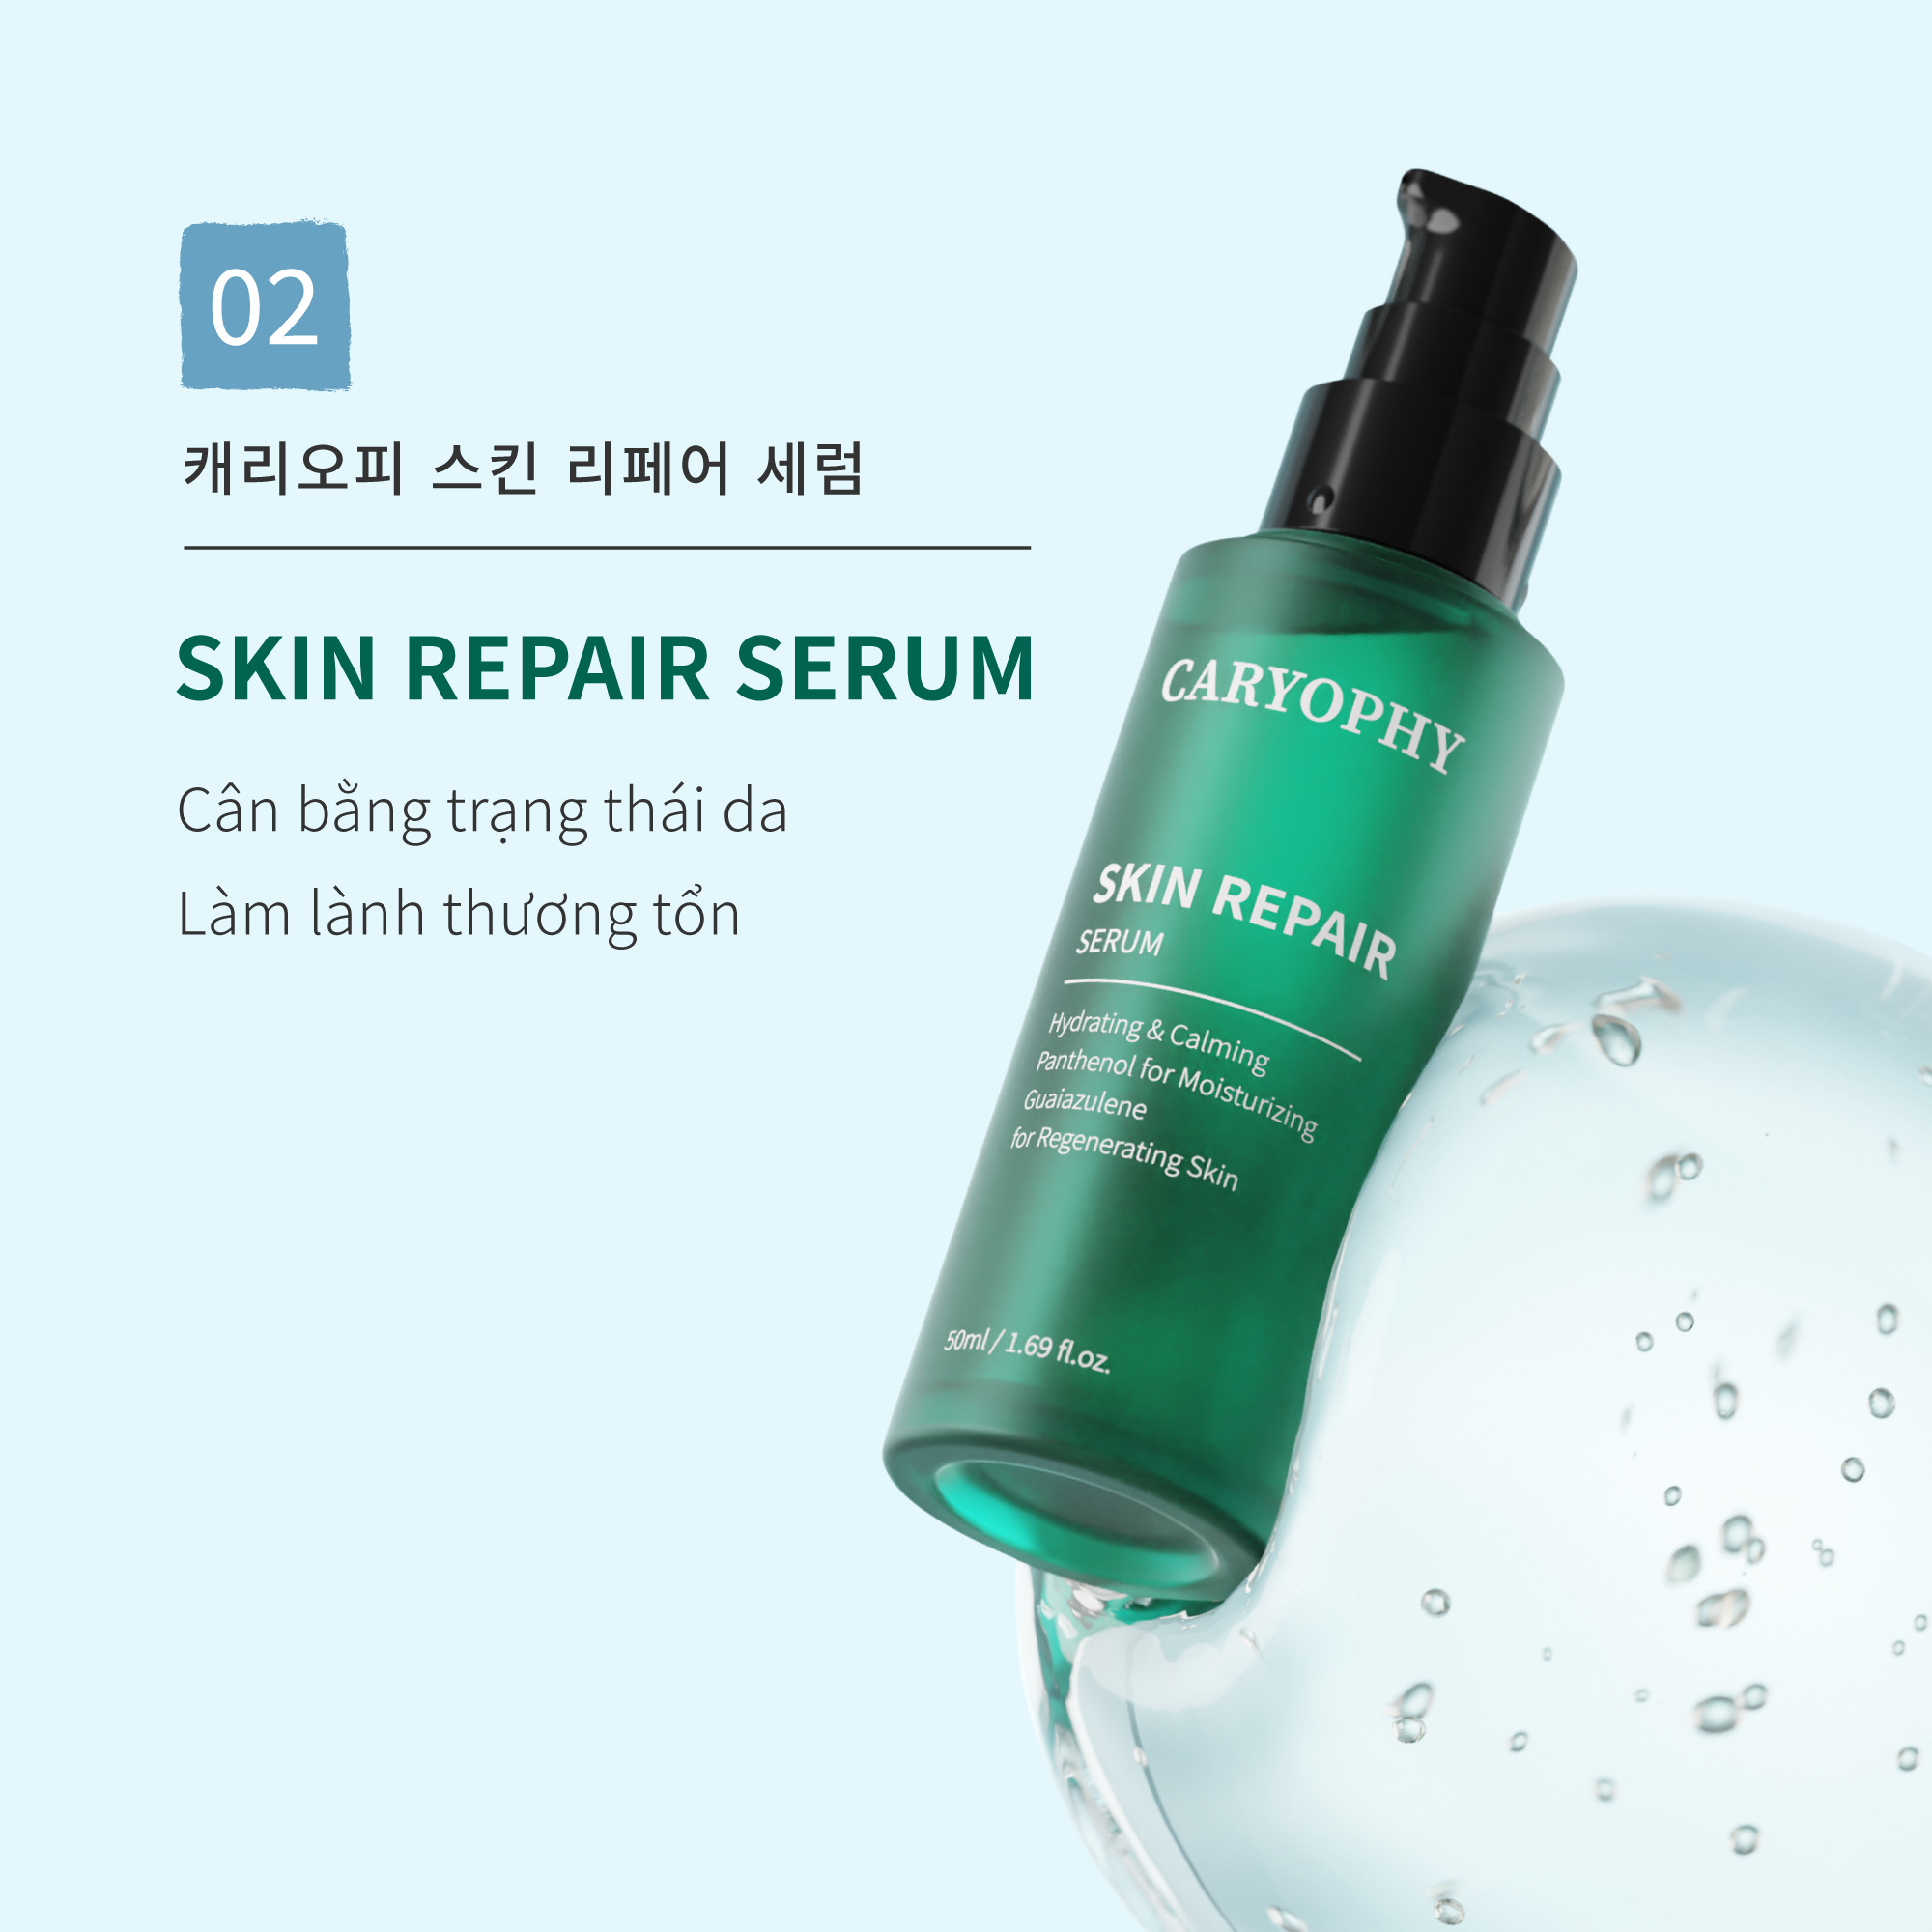 caryophy-skin-repair-serum